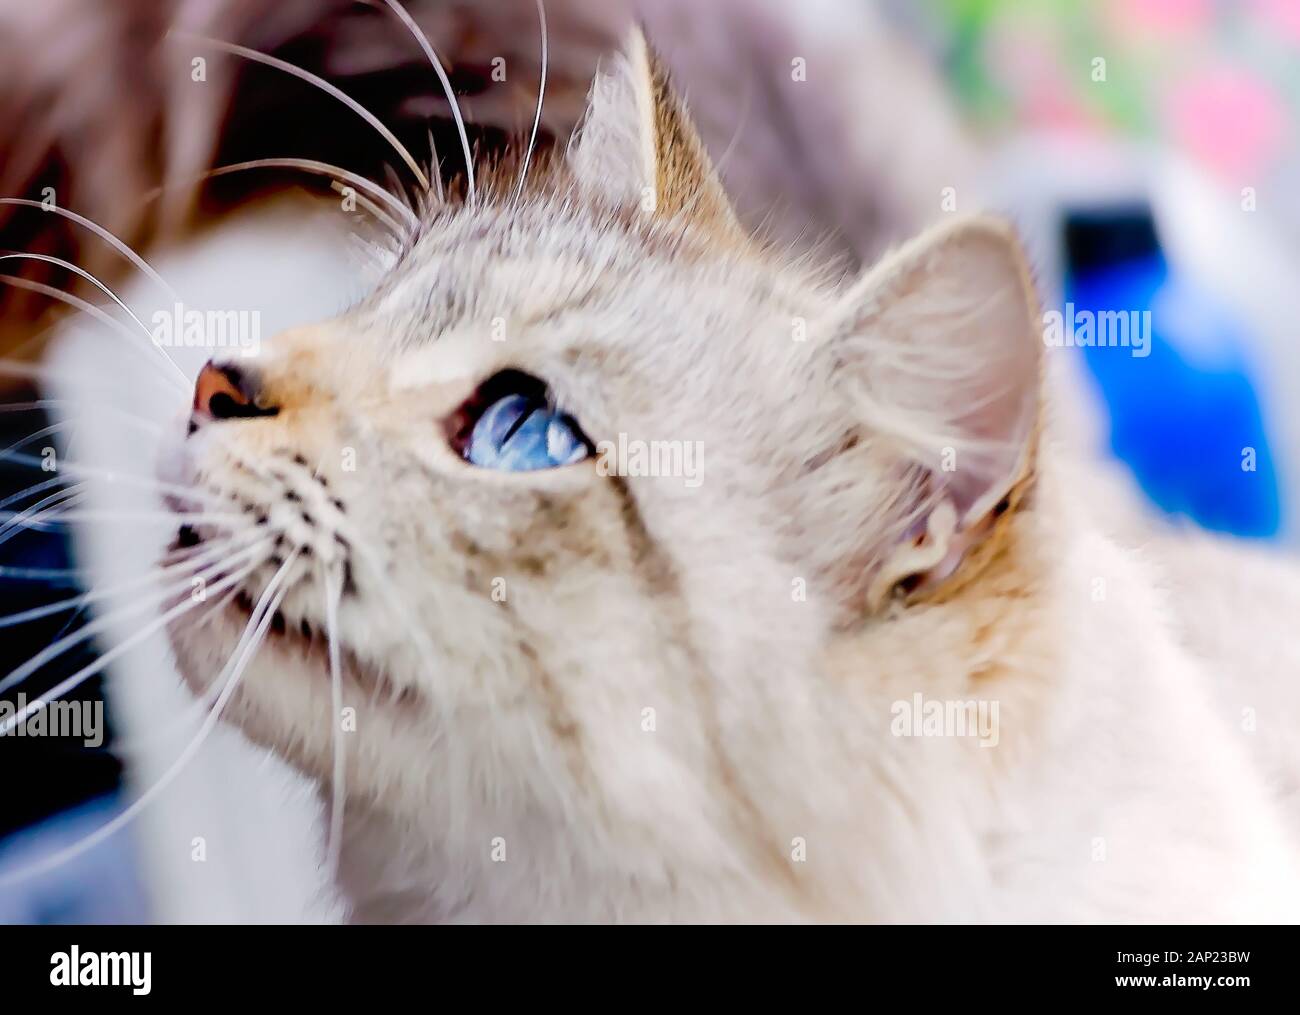 Un poil long silver tabby cat ressemble à son propriétaire, le 13 janvier 2020, dans l'Alabama, Coden. Banque D'Images